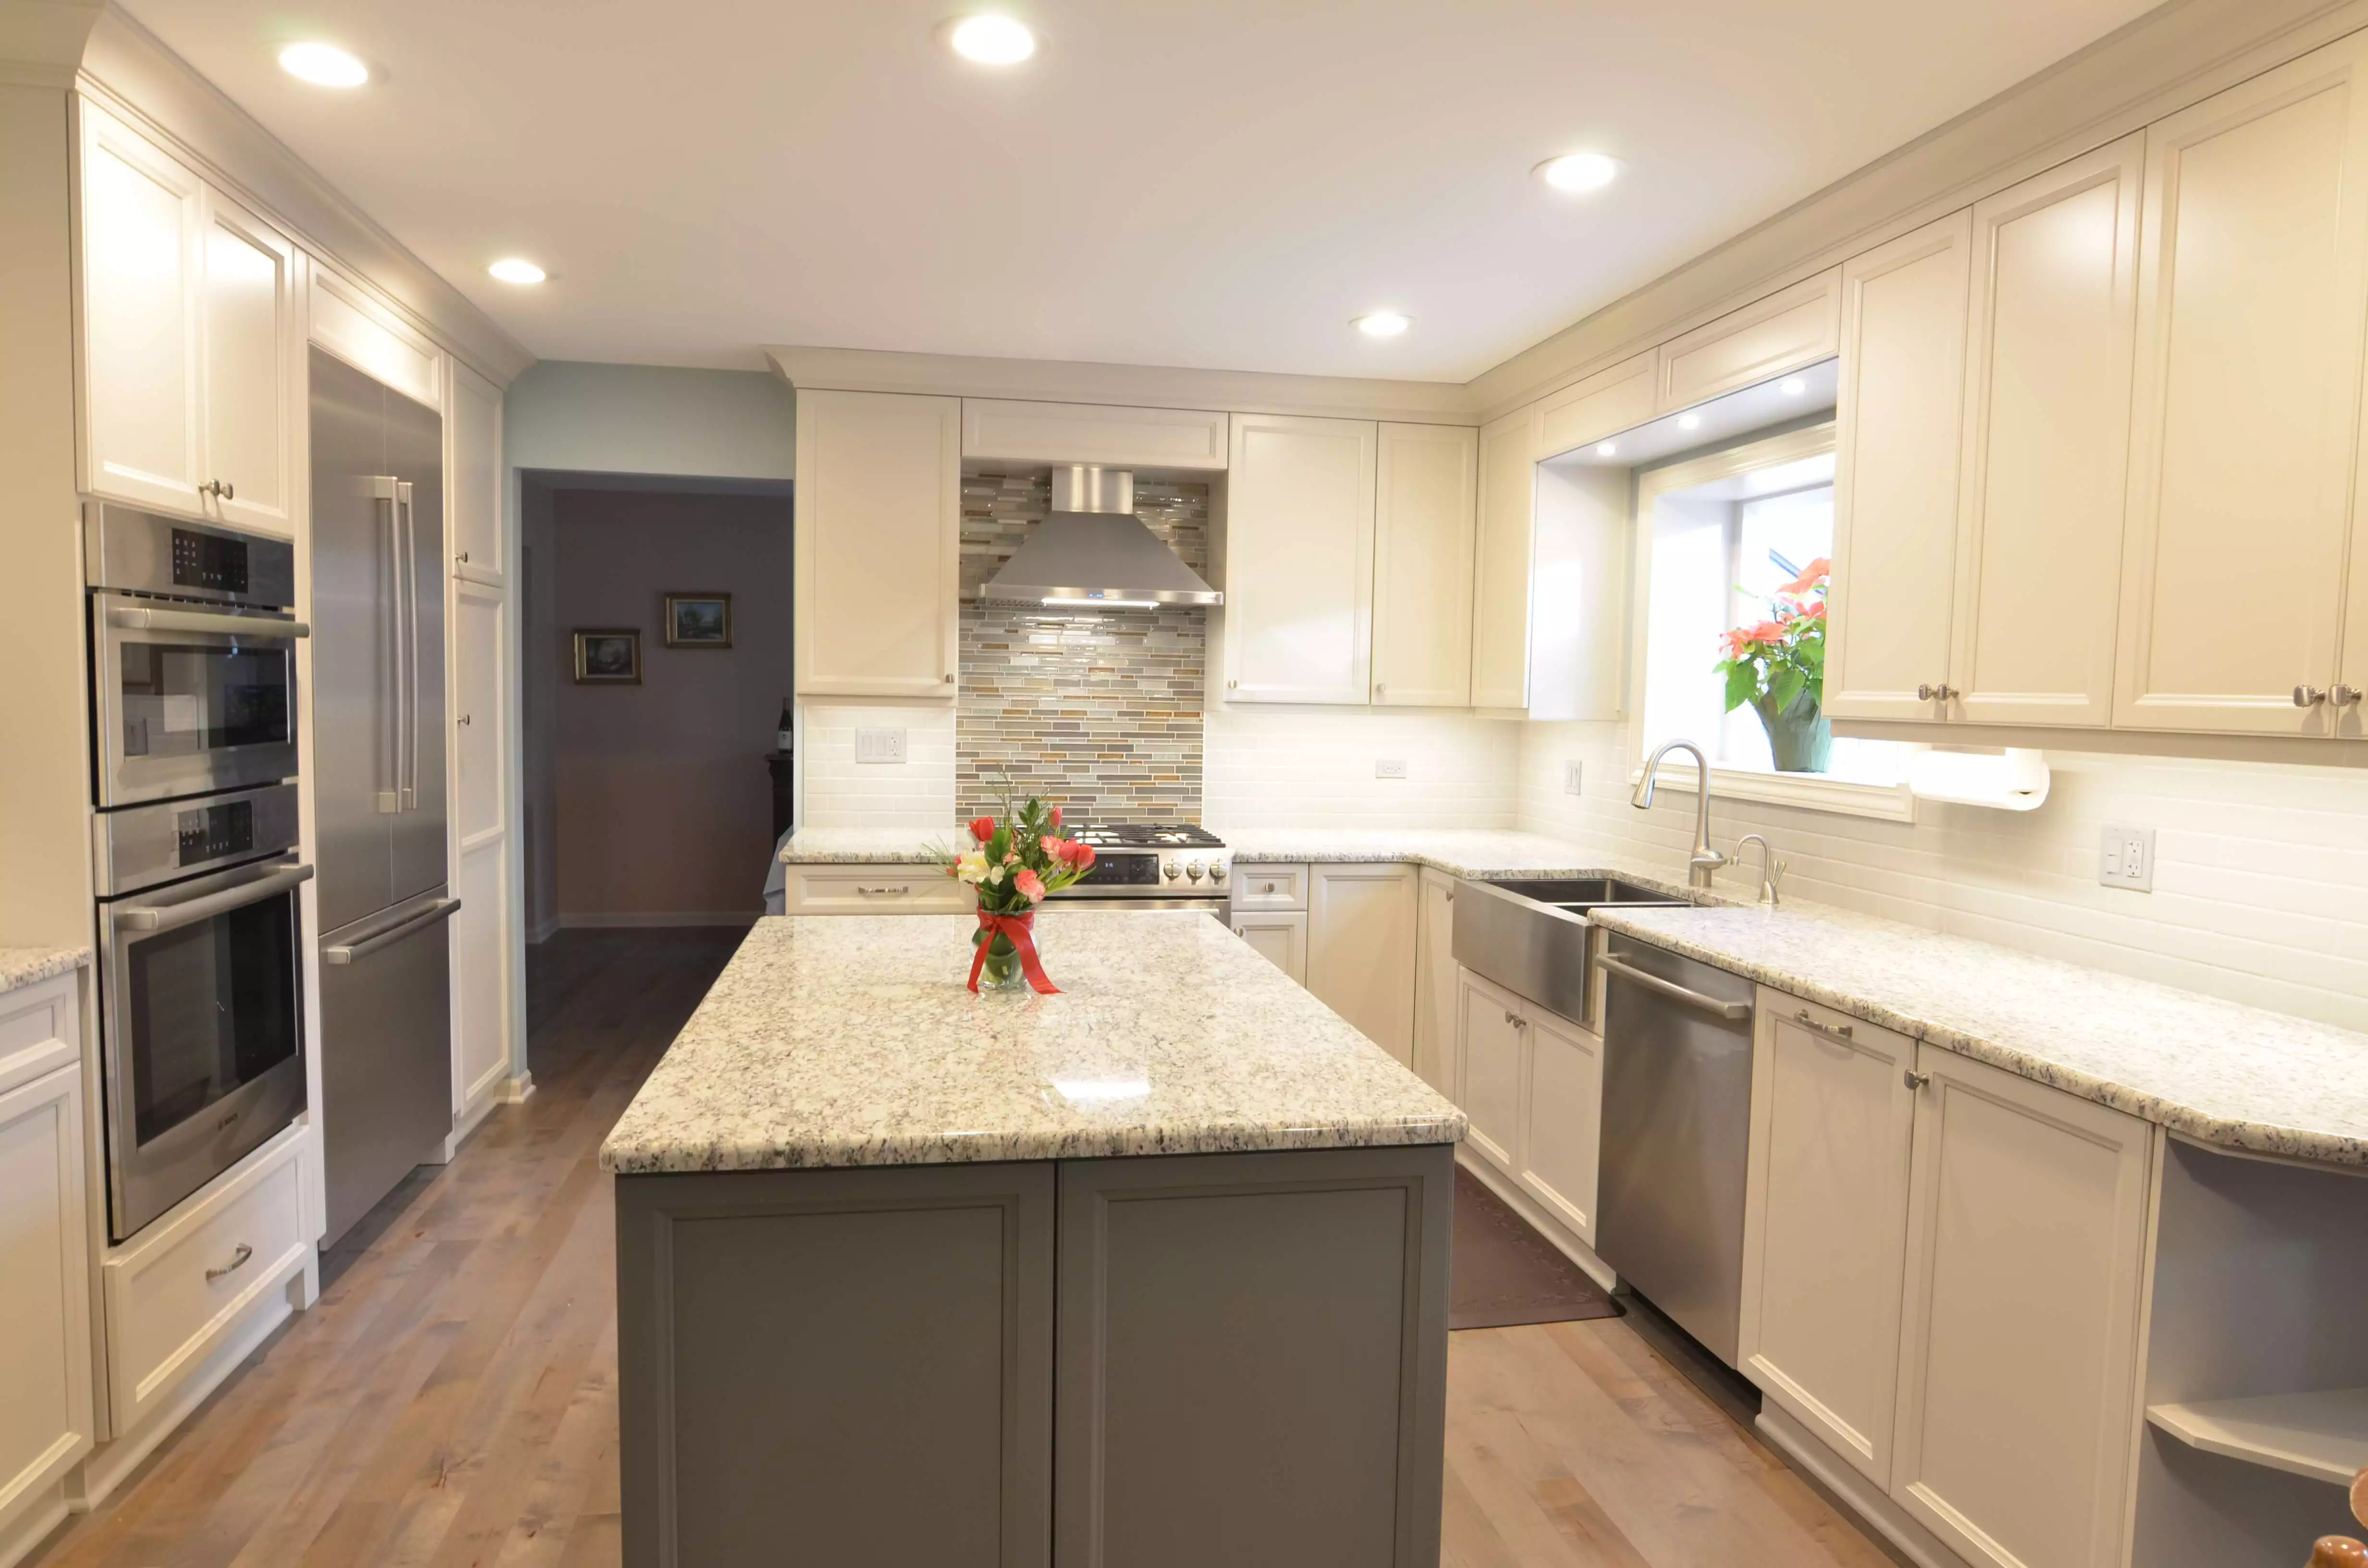 large bright kitchen remodel recess lighting white cabinetry hooded vent tile backsplash